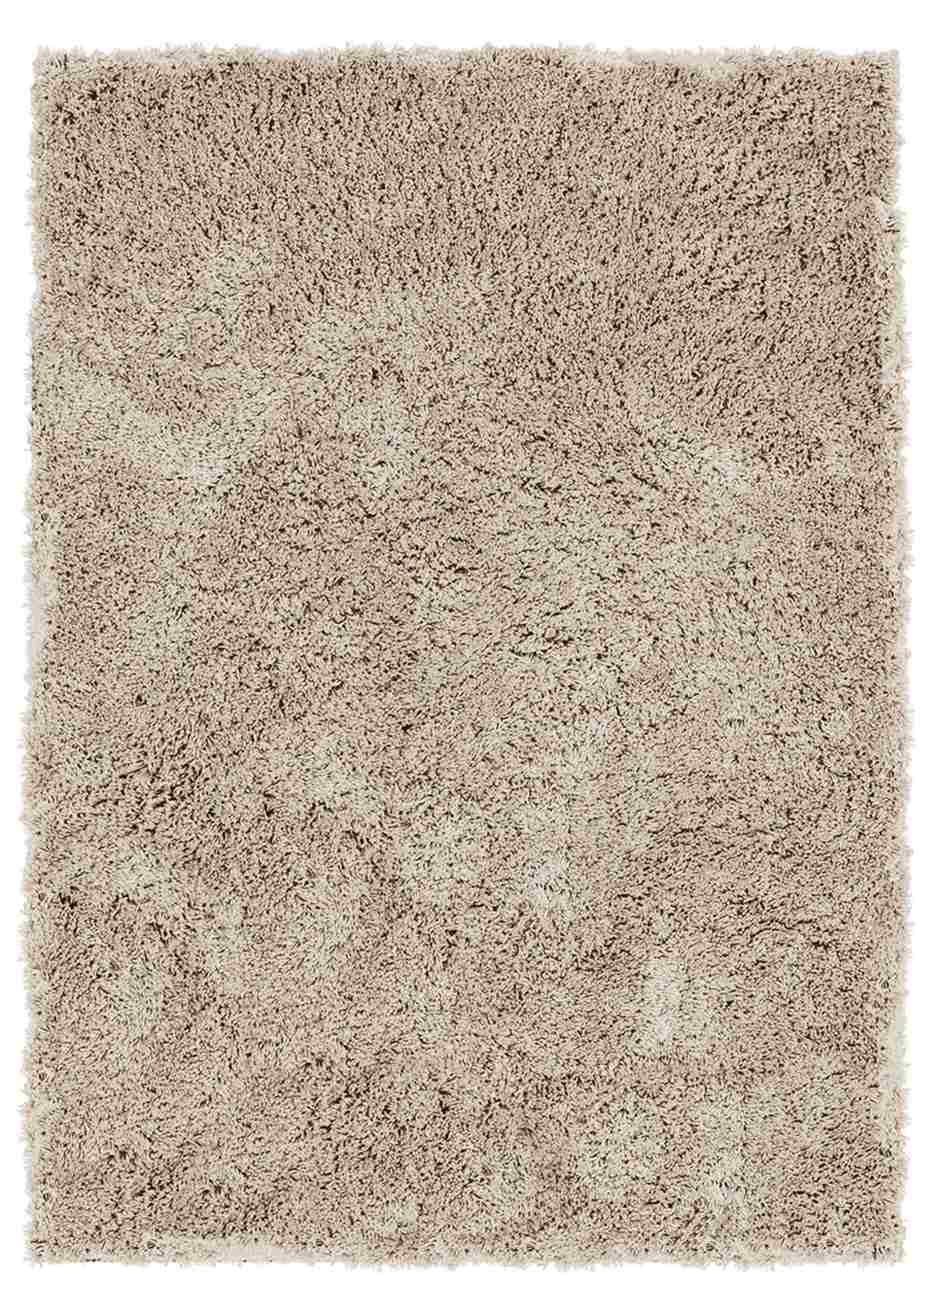 Der Teppich Celeste überzeugt mit seinem modernen Design. Gefertigt wurde er aus Kunstfasern, welches einen Taupe Farbton besitzt. Der Teppich besitzt eine Größe von 200x300 cm.